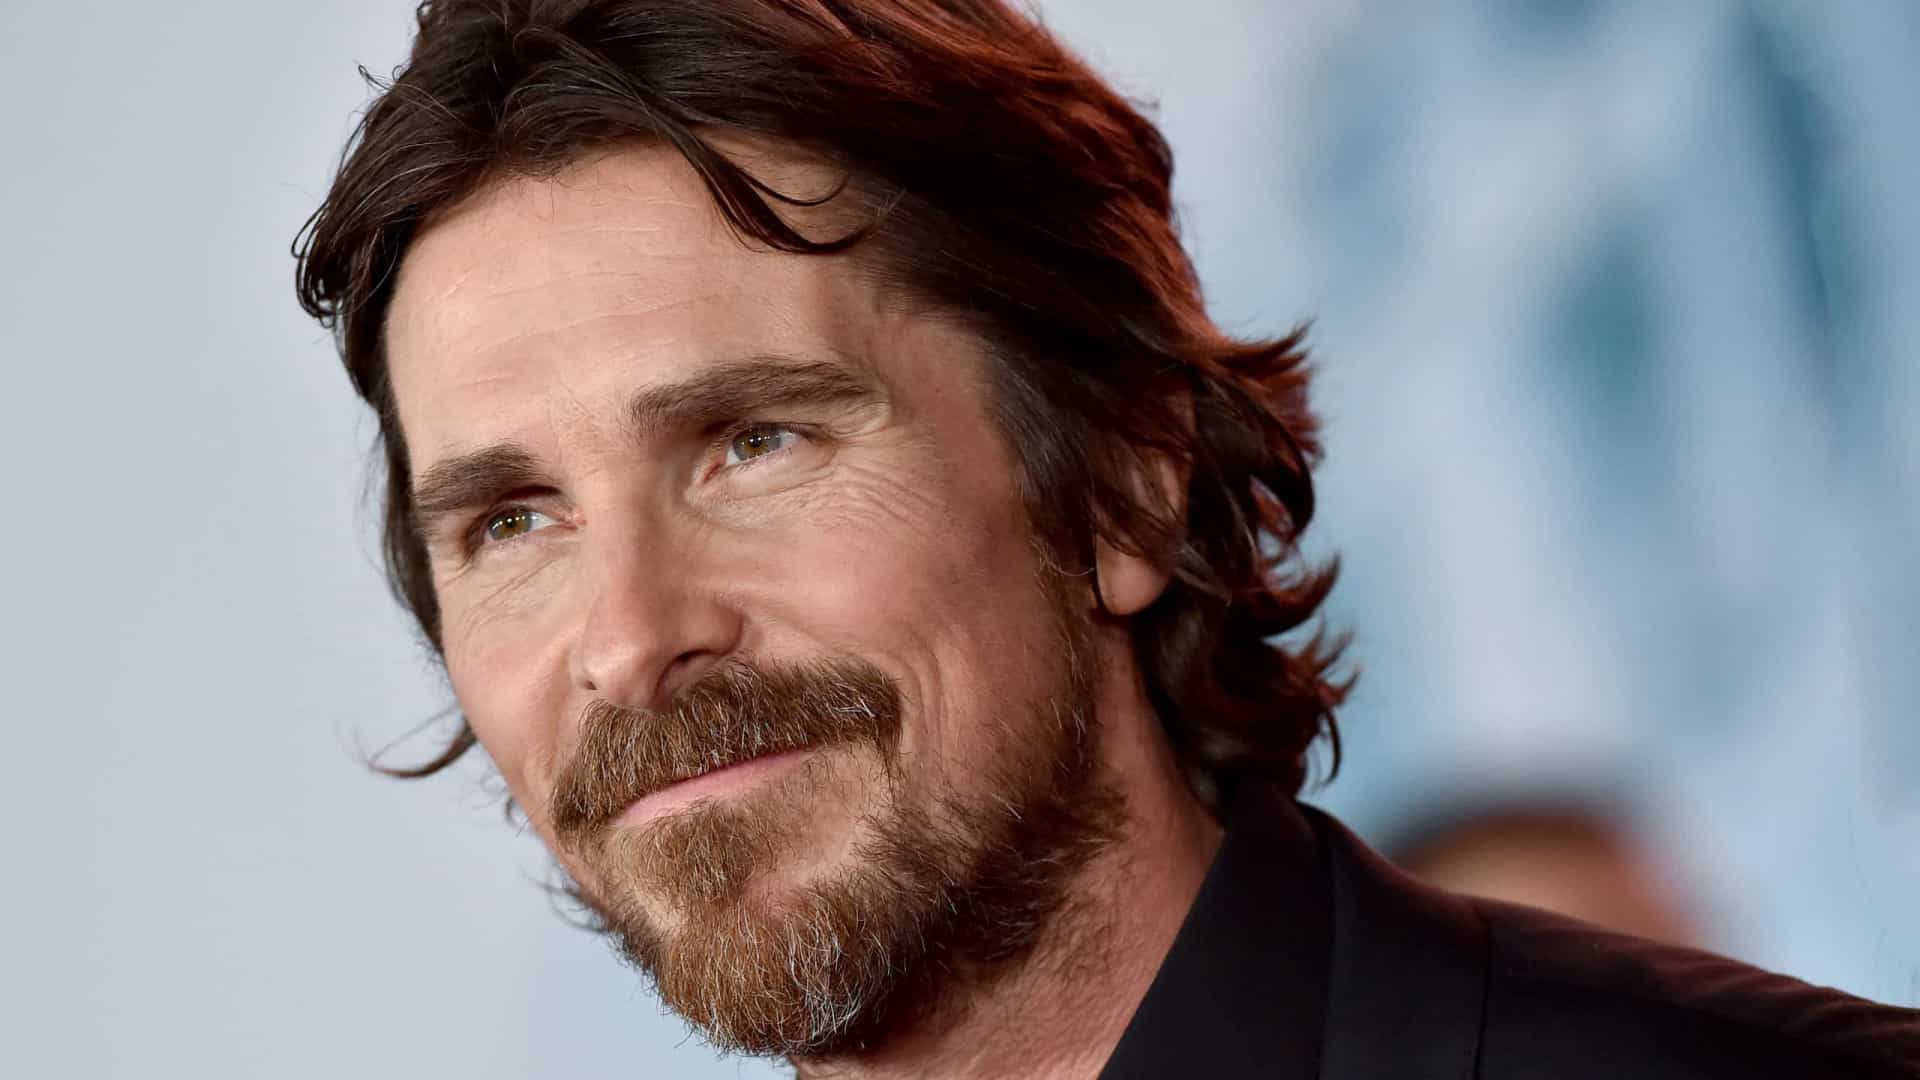 Imagens revelam visual de Christian Bale como vilão de Thor 4; veja